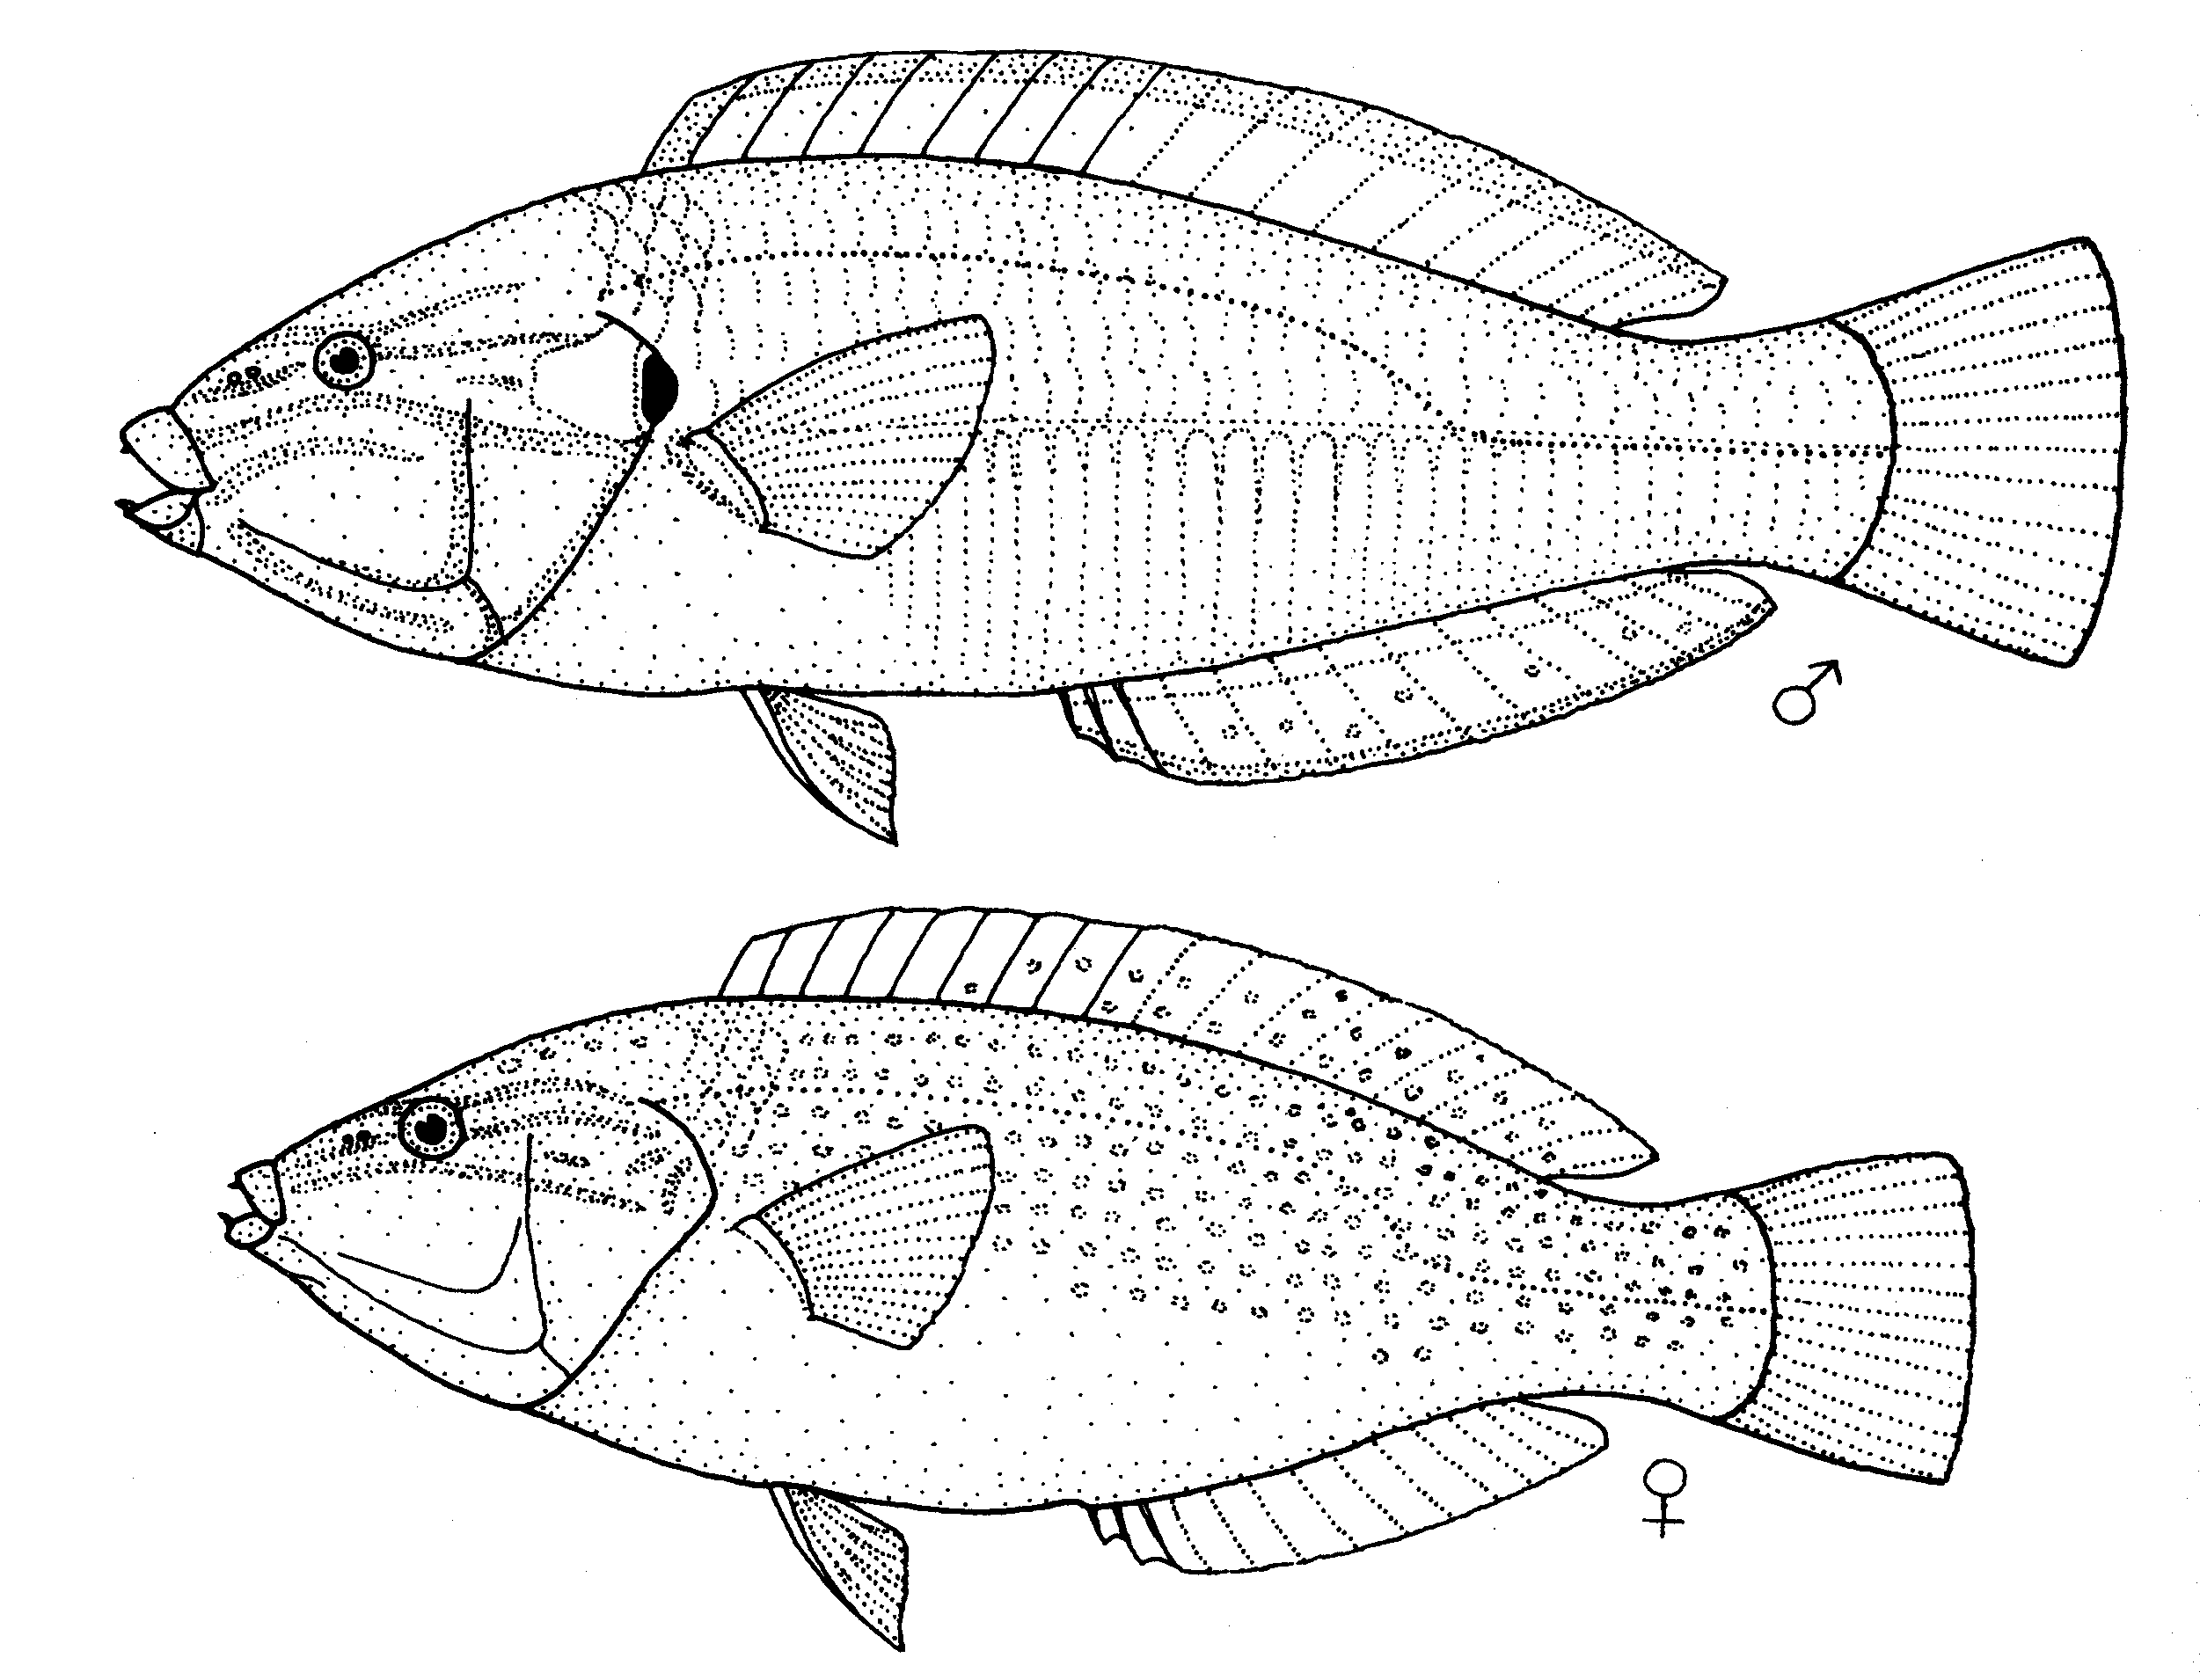  Mâle (en haut) et femelle (en bas)